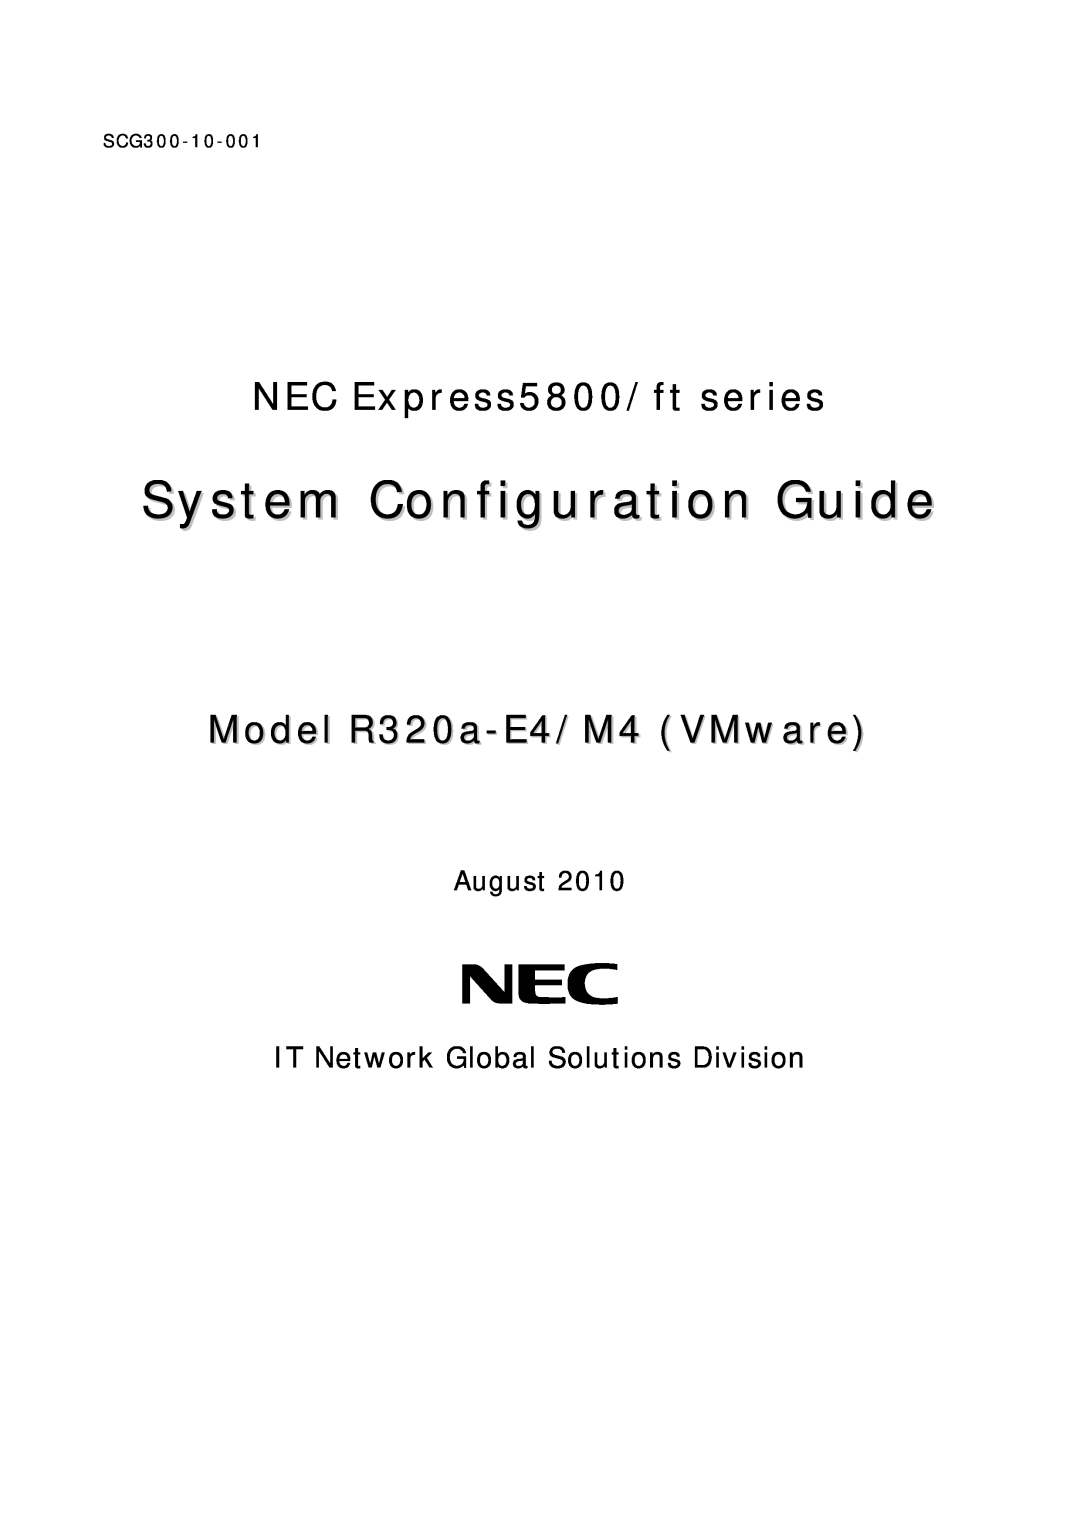 NEC R320A-E4, R320B-M4 manual Express5800/R320a-E4,R320b-M4, System Configuration Guide, Windows2008 R2 model, 2010.10 